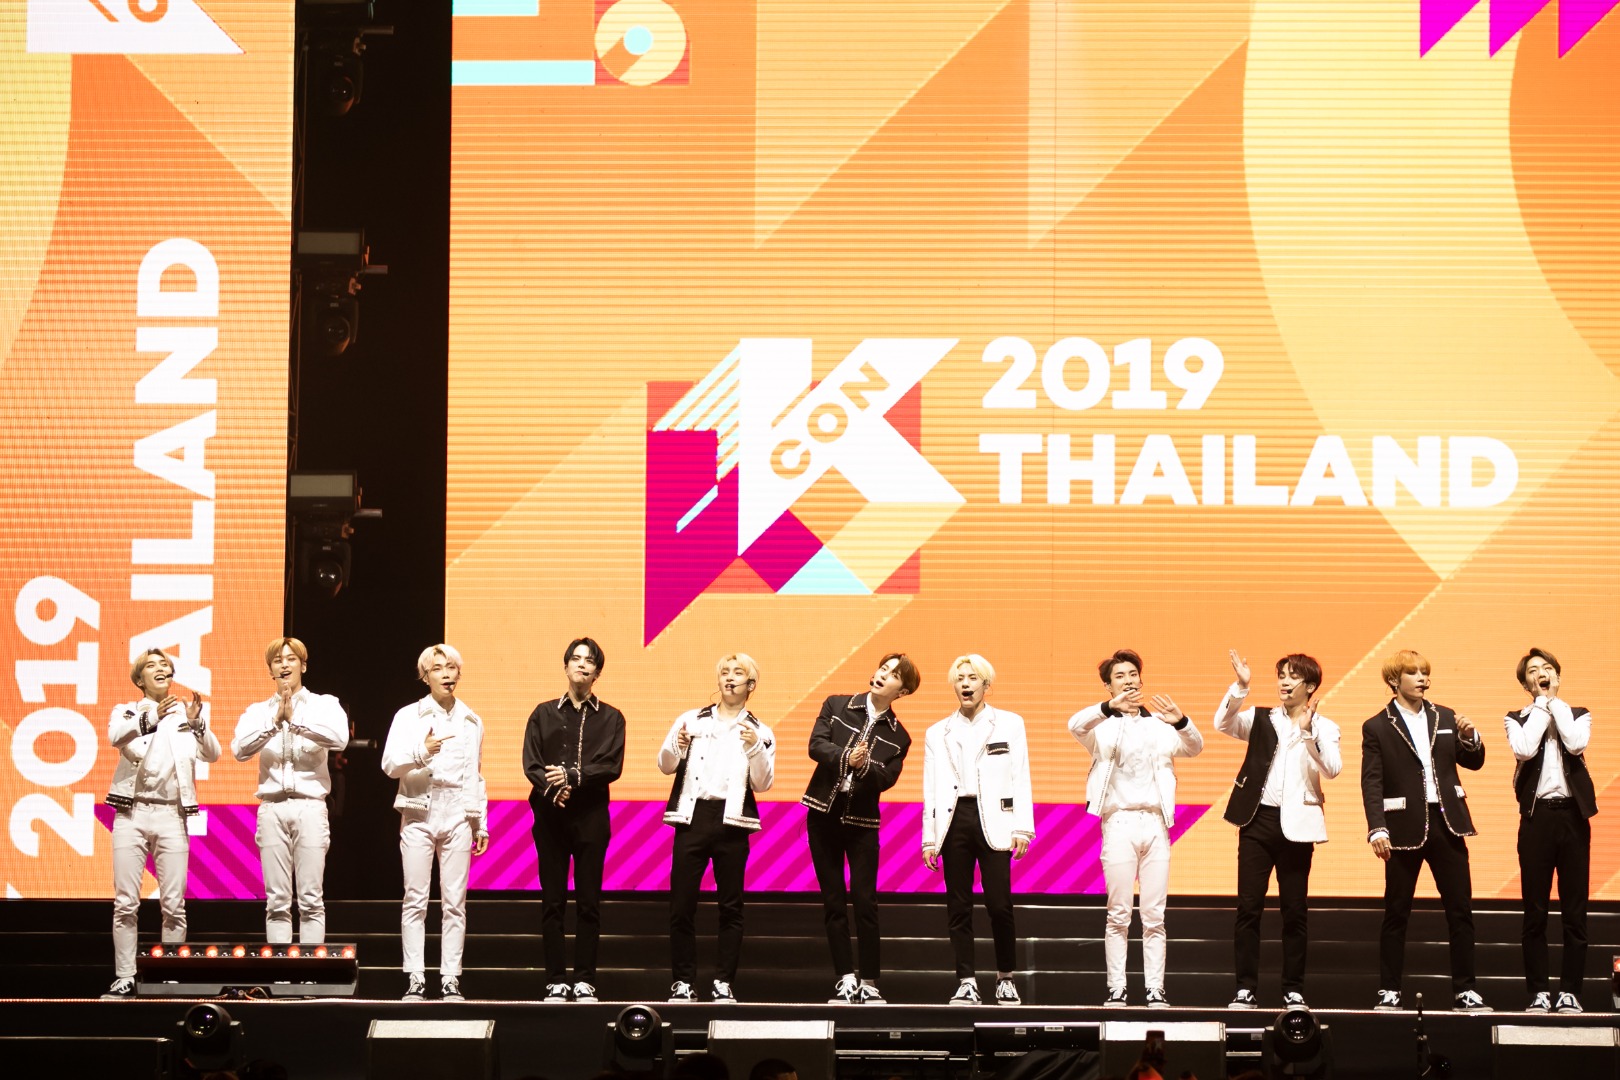 KCON 2019 Thailand